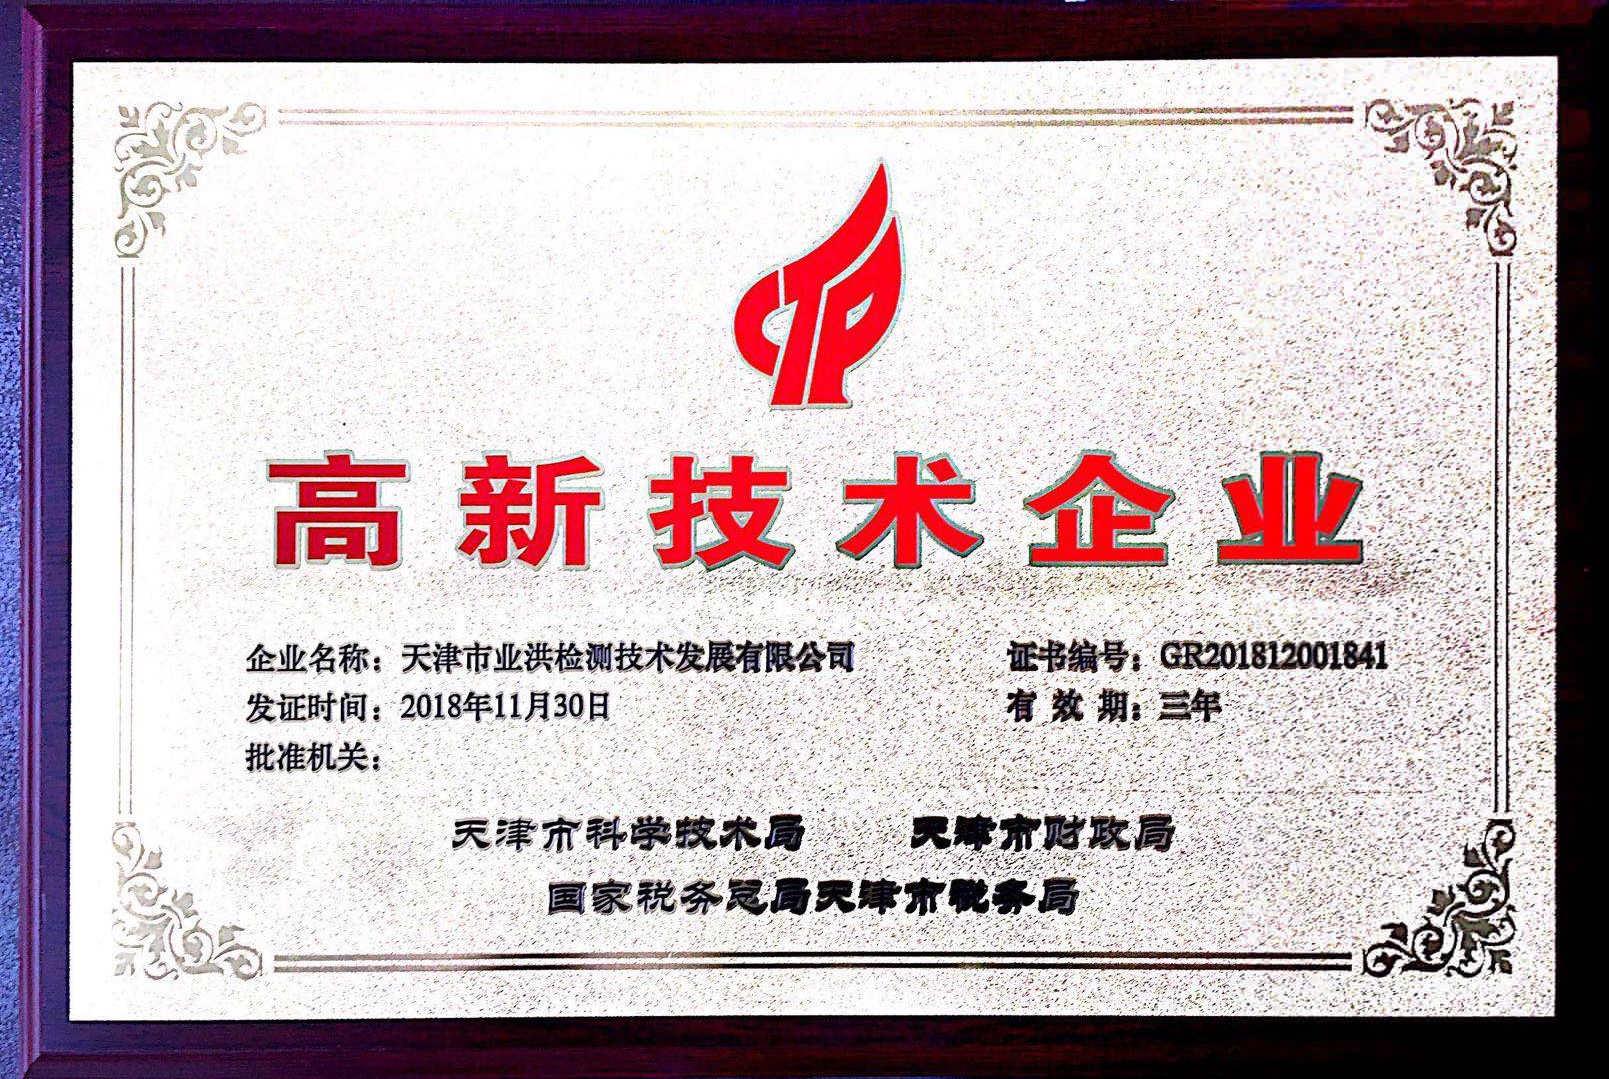 天津市业洪检测技术发展有限公司荣获高新技术企业证书